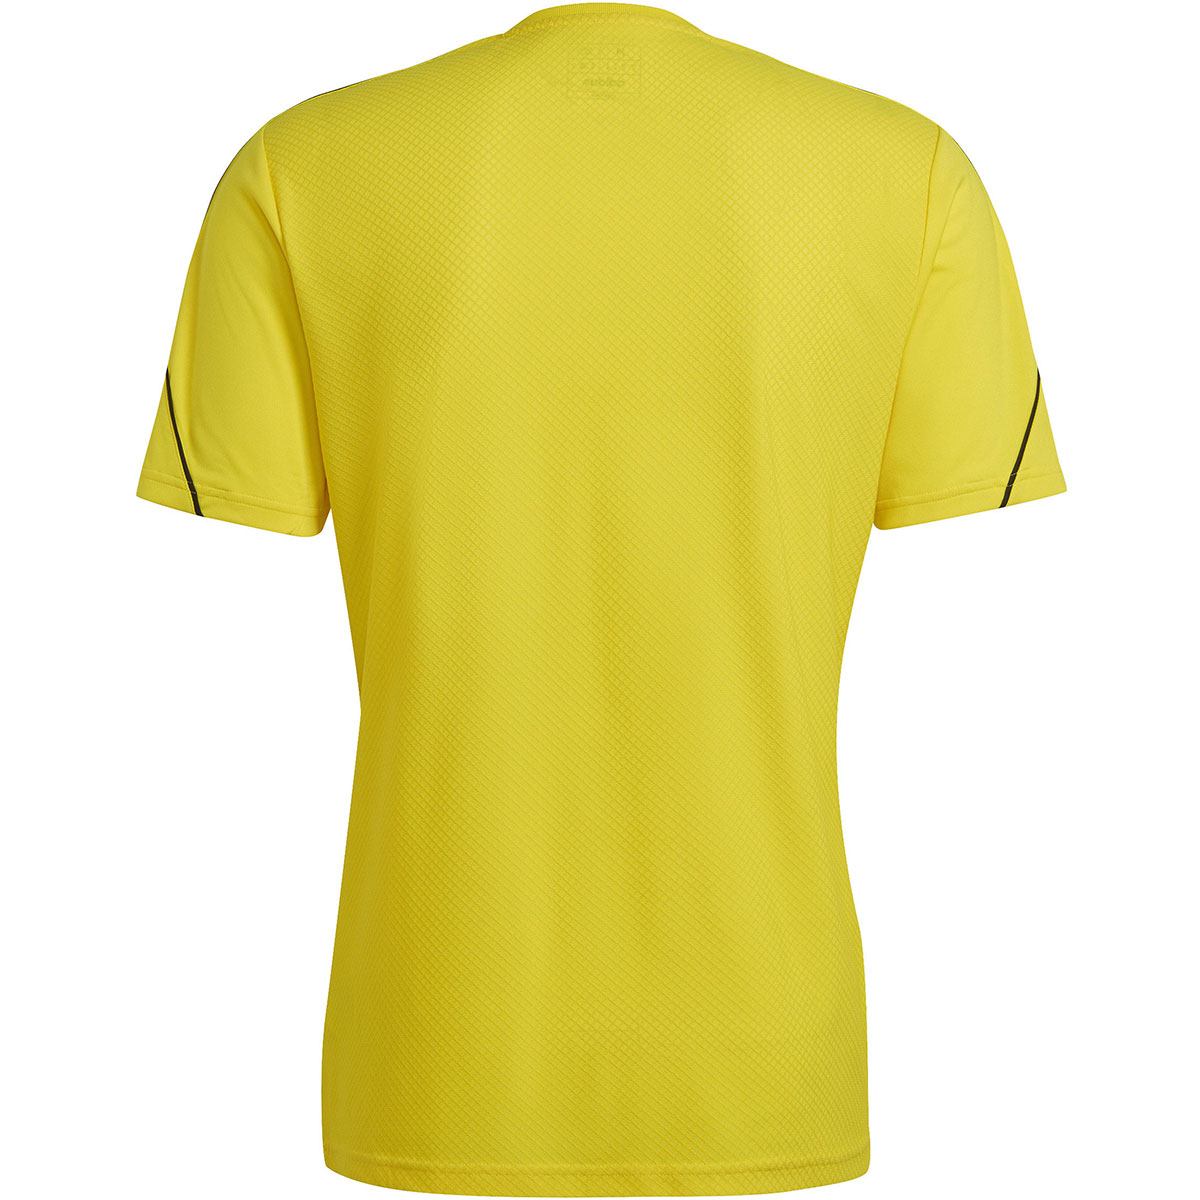 Adidas Herren Trikot Tiro 23 gelb-schwarz